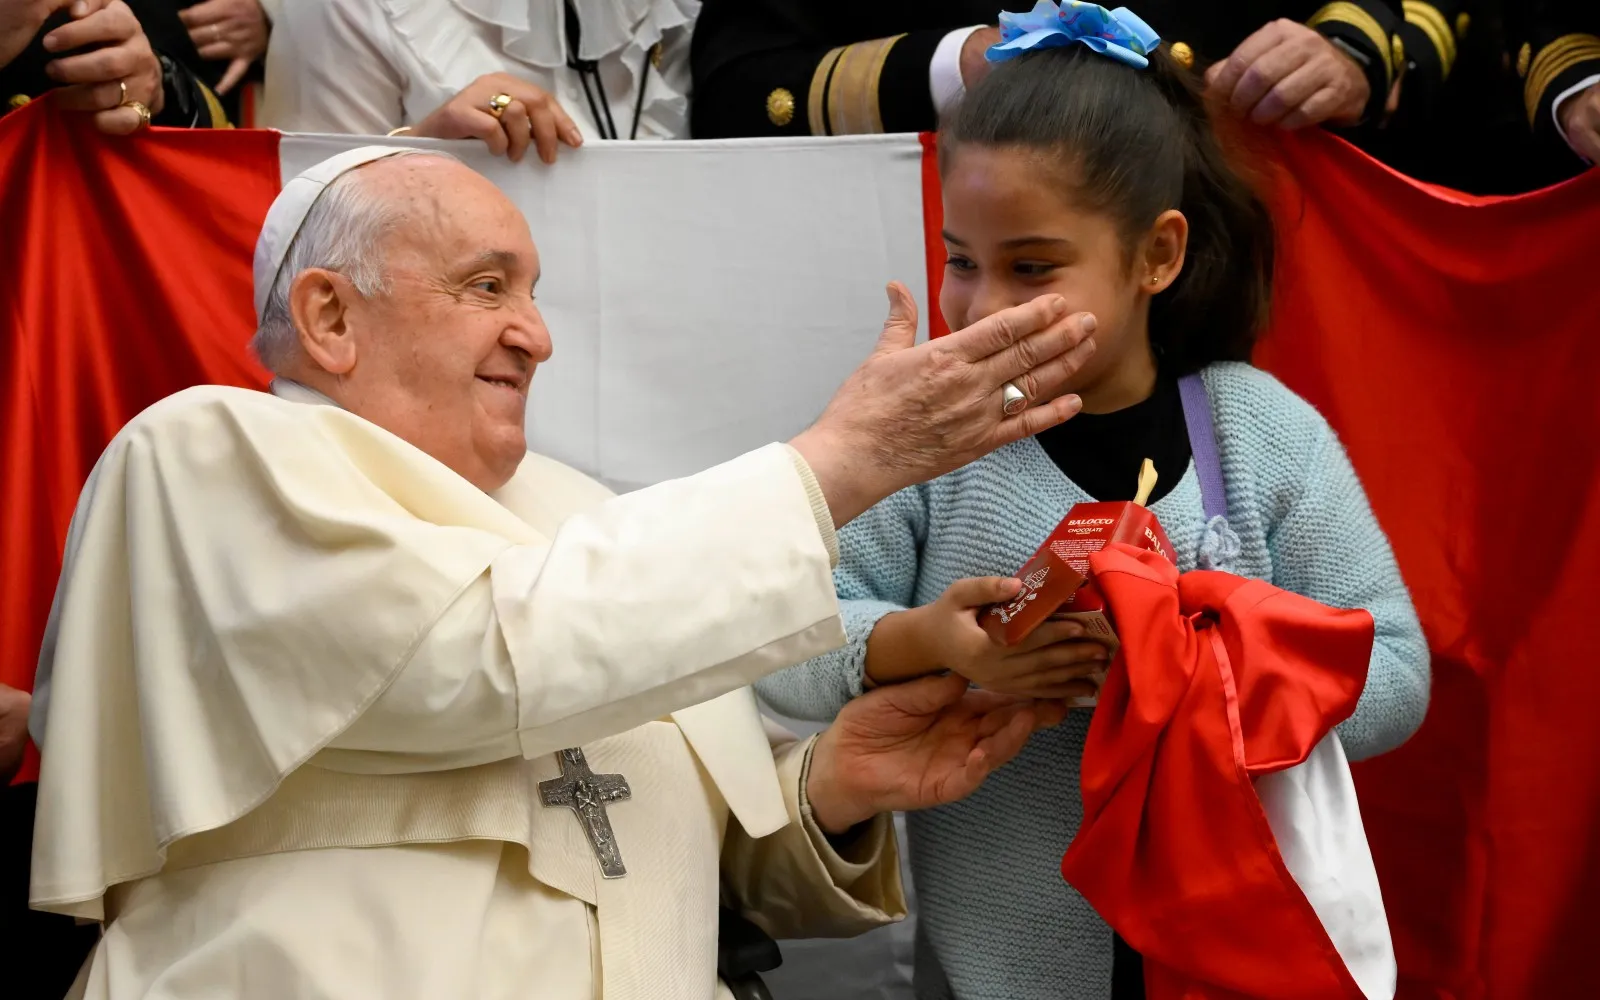 Imagen referencial del Papa Francisco con una niña durante una Audiencia General?w=200&h=150